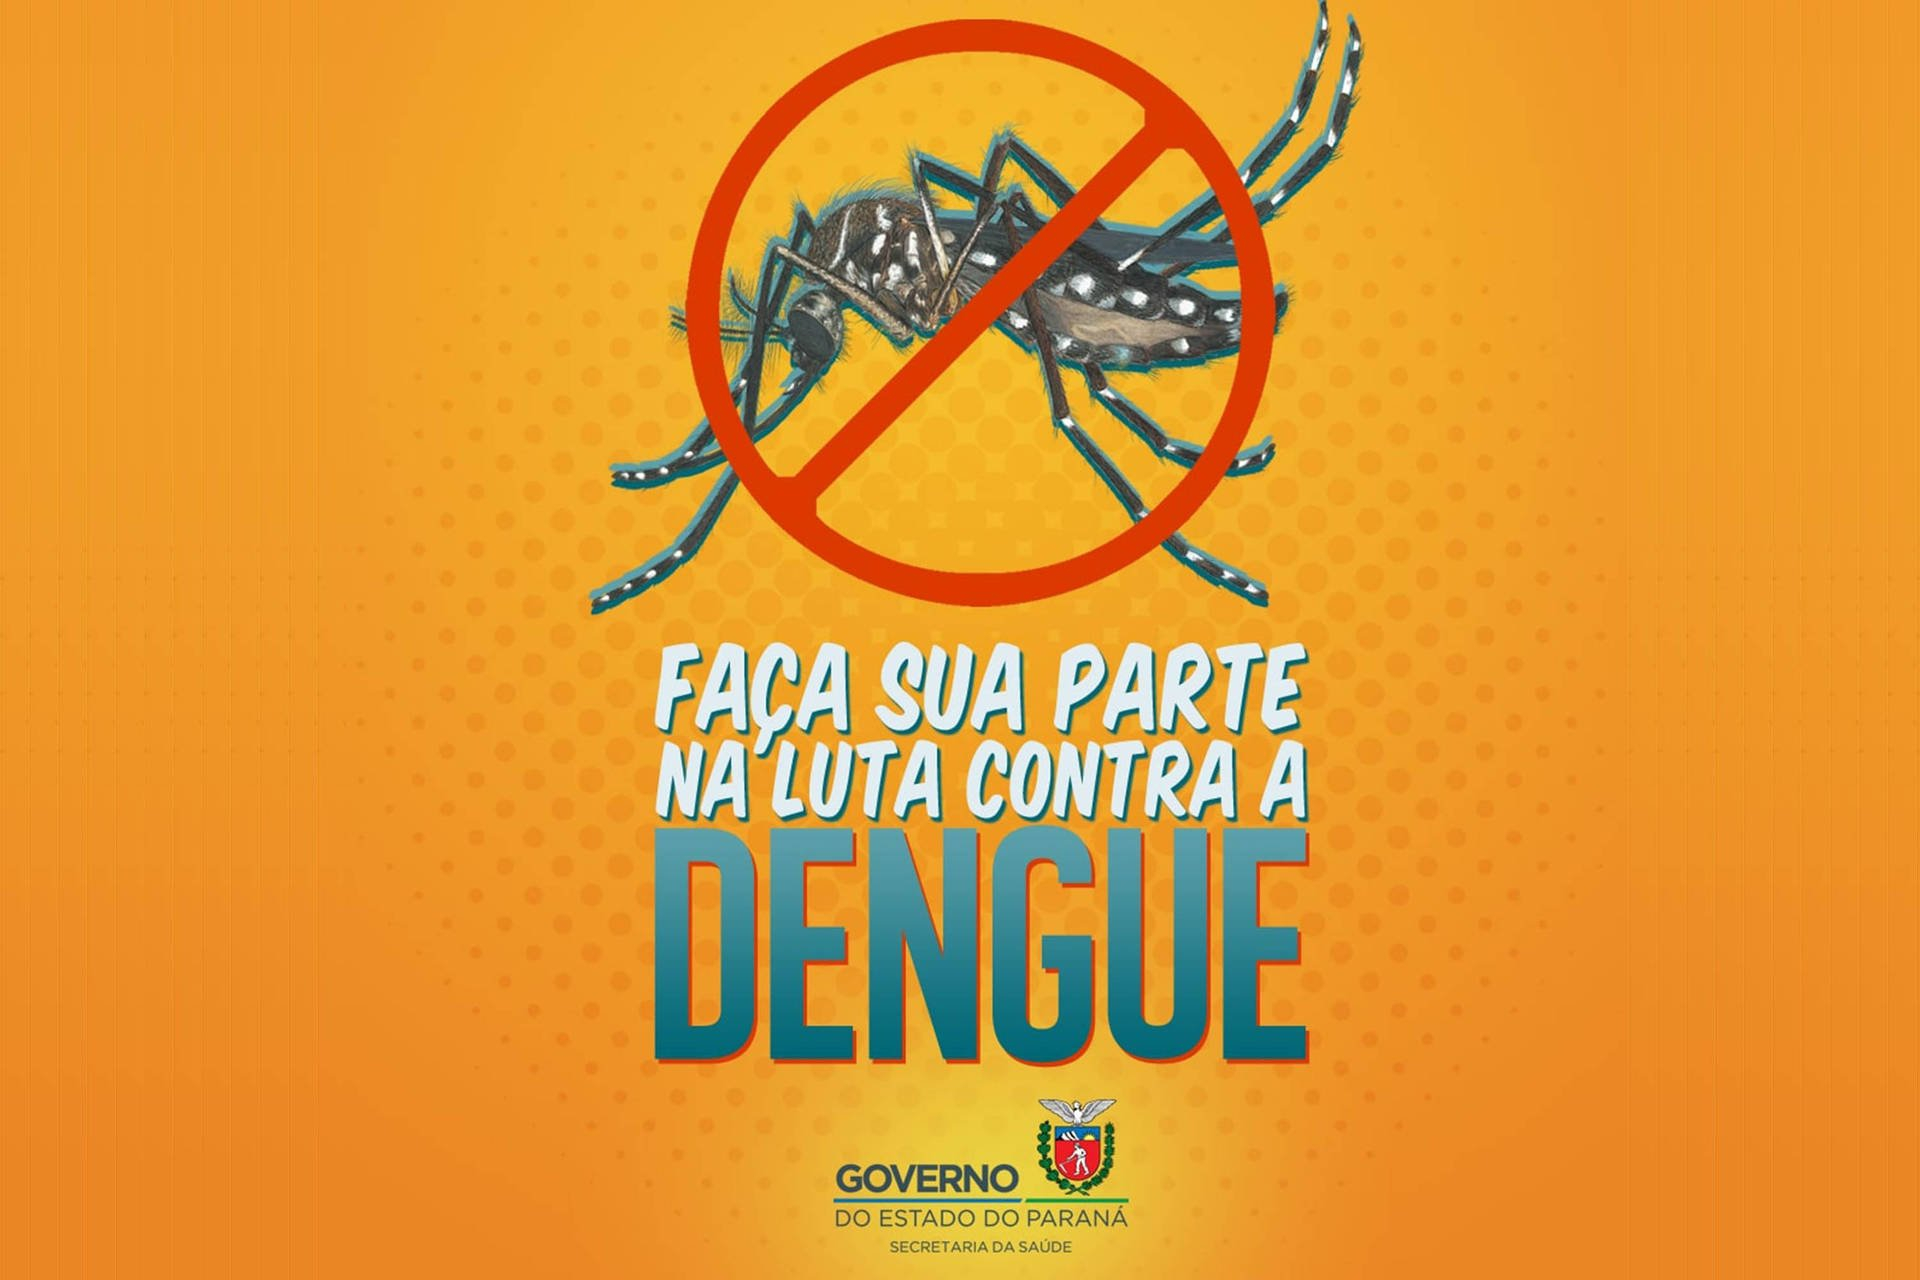 Mobilização contra a dengue envolve todas as secretarias e instituições estaduais